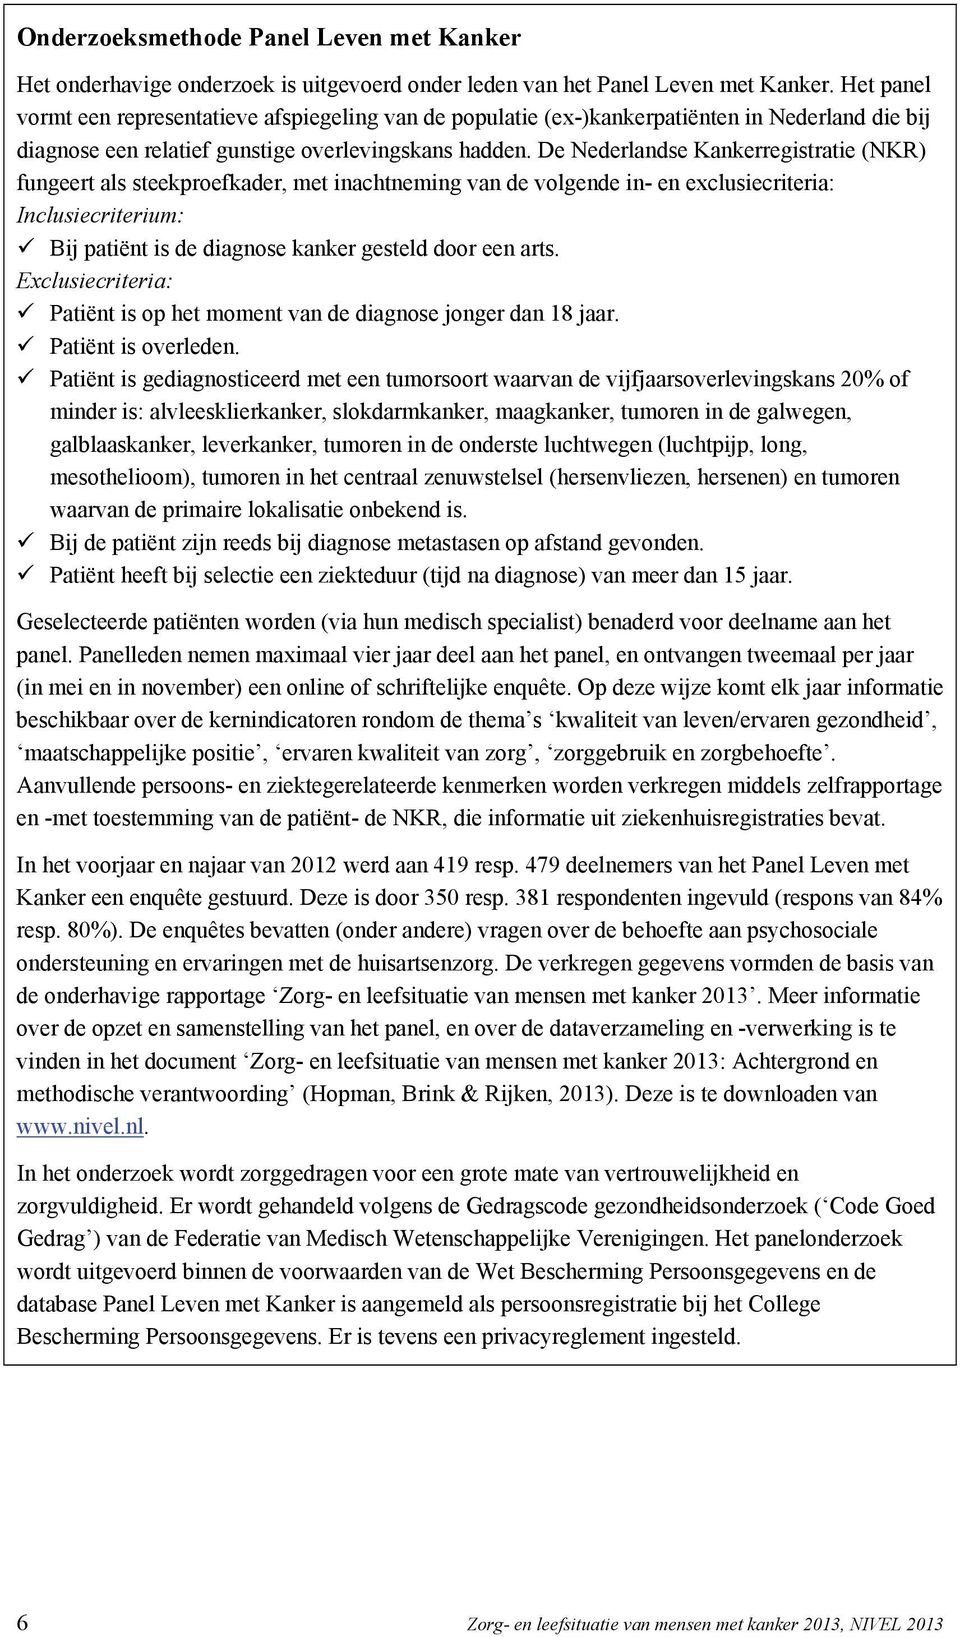 De Nederlandse Kankerregistratie (NKR) fungeert als steekproefkader, met inachtneming van de volgende in- en exclusiecriteria: Inclusiecriterium: Bij patiënt is de diagnose kanker gesteld door een